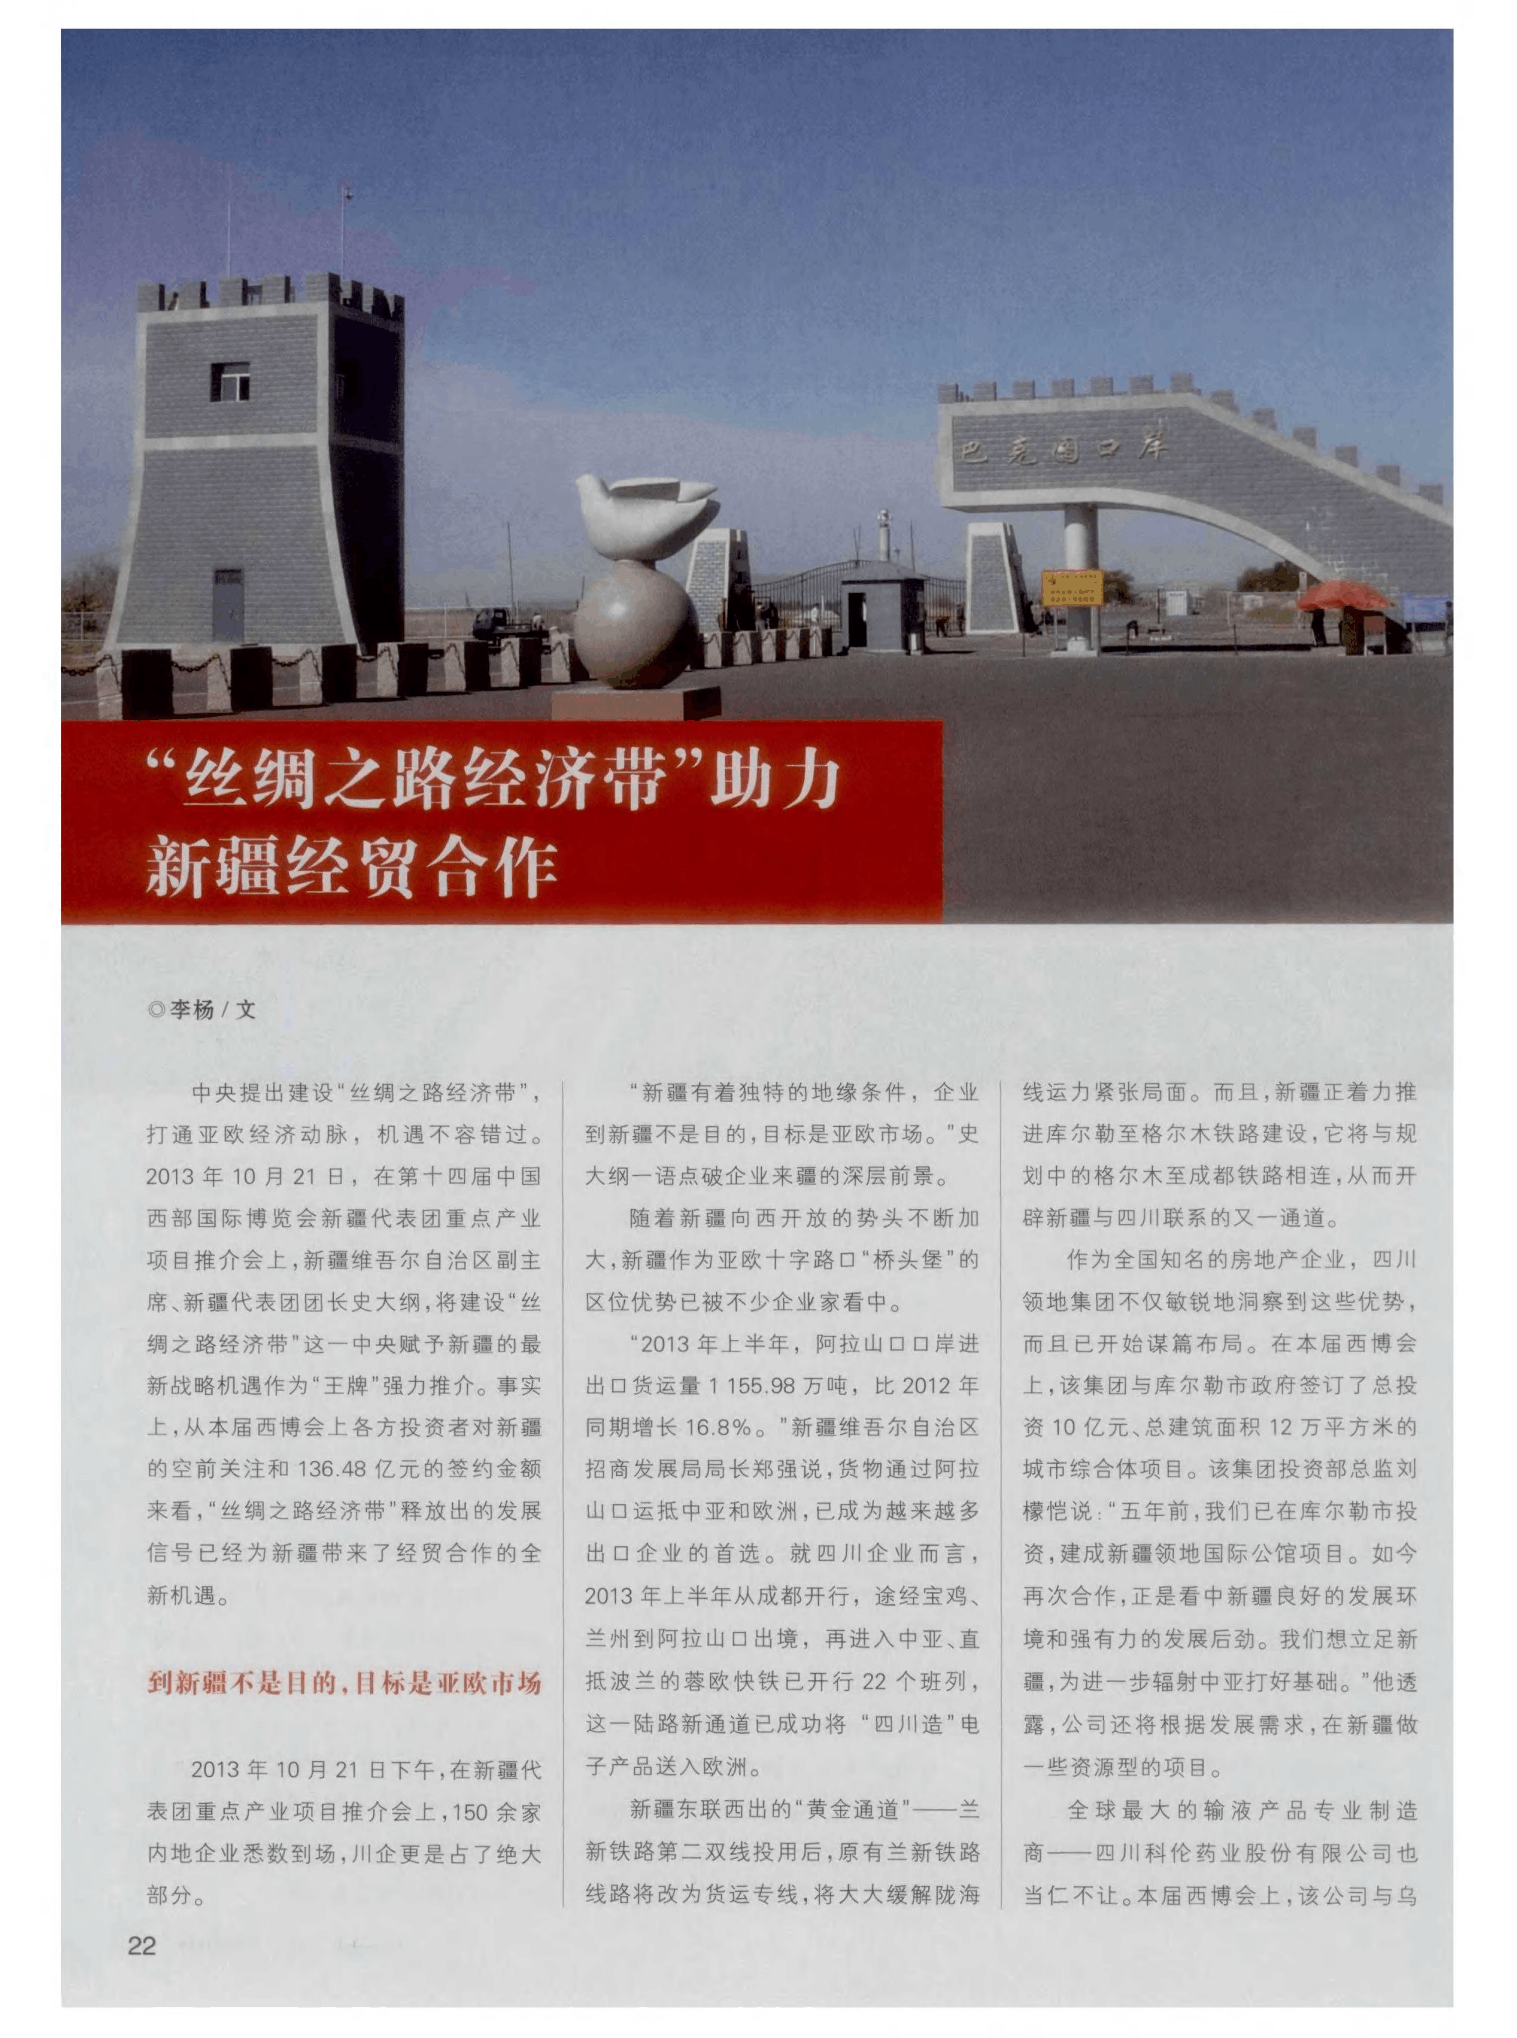 


中国—亚欧BG大游博览会帮助我们跻身“开放前沿”的重要平台
